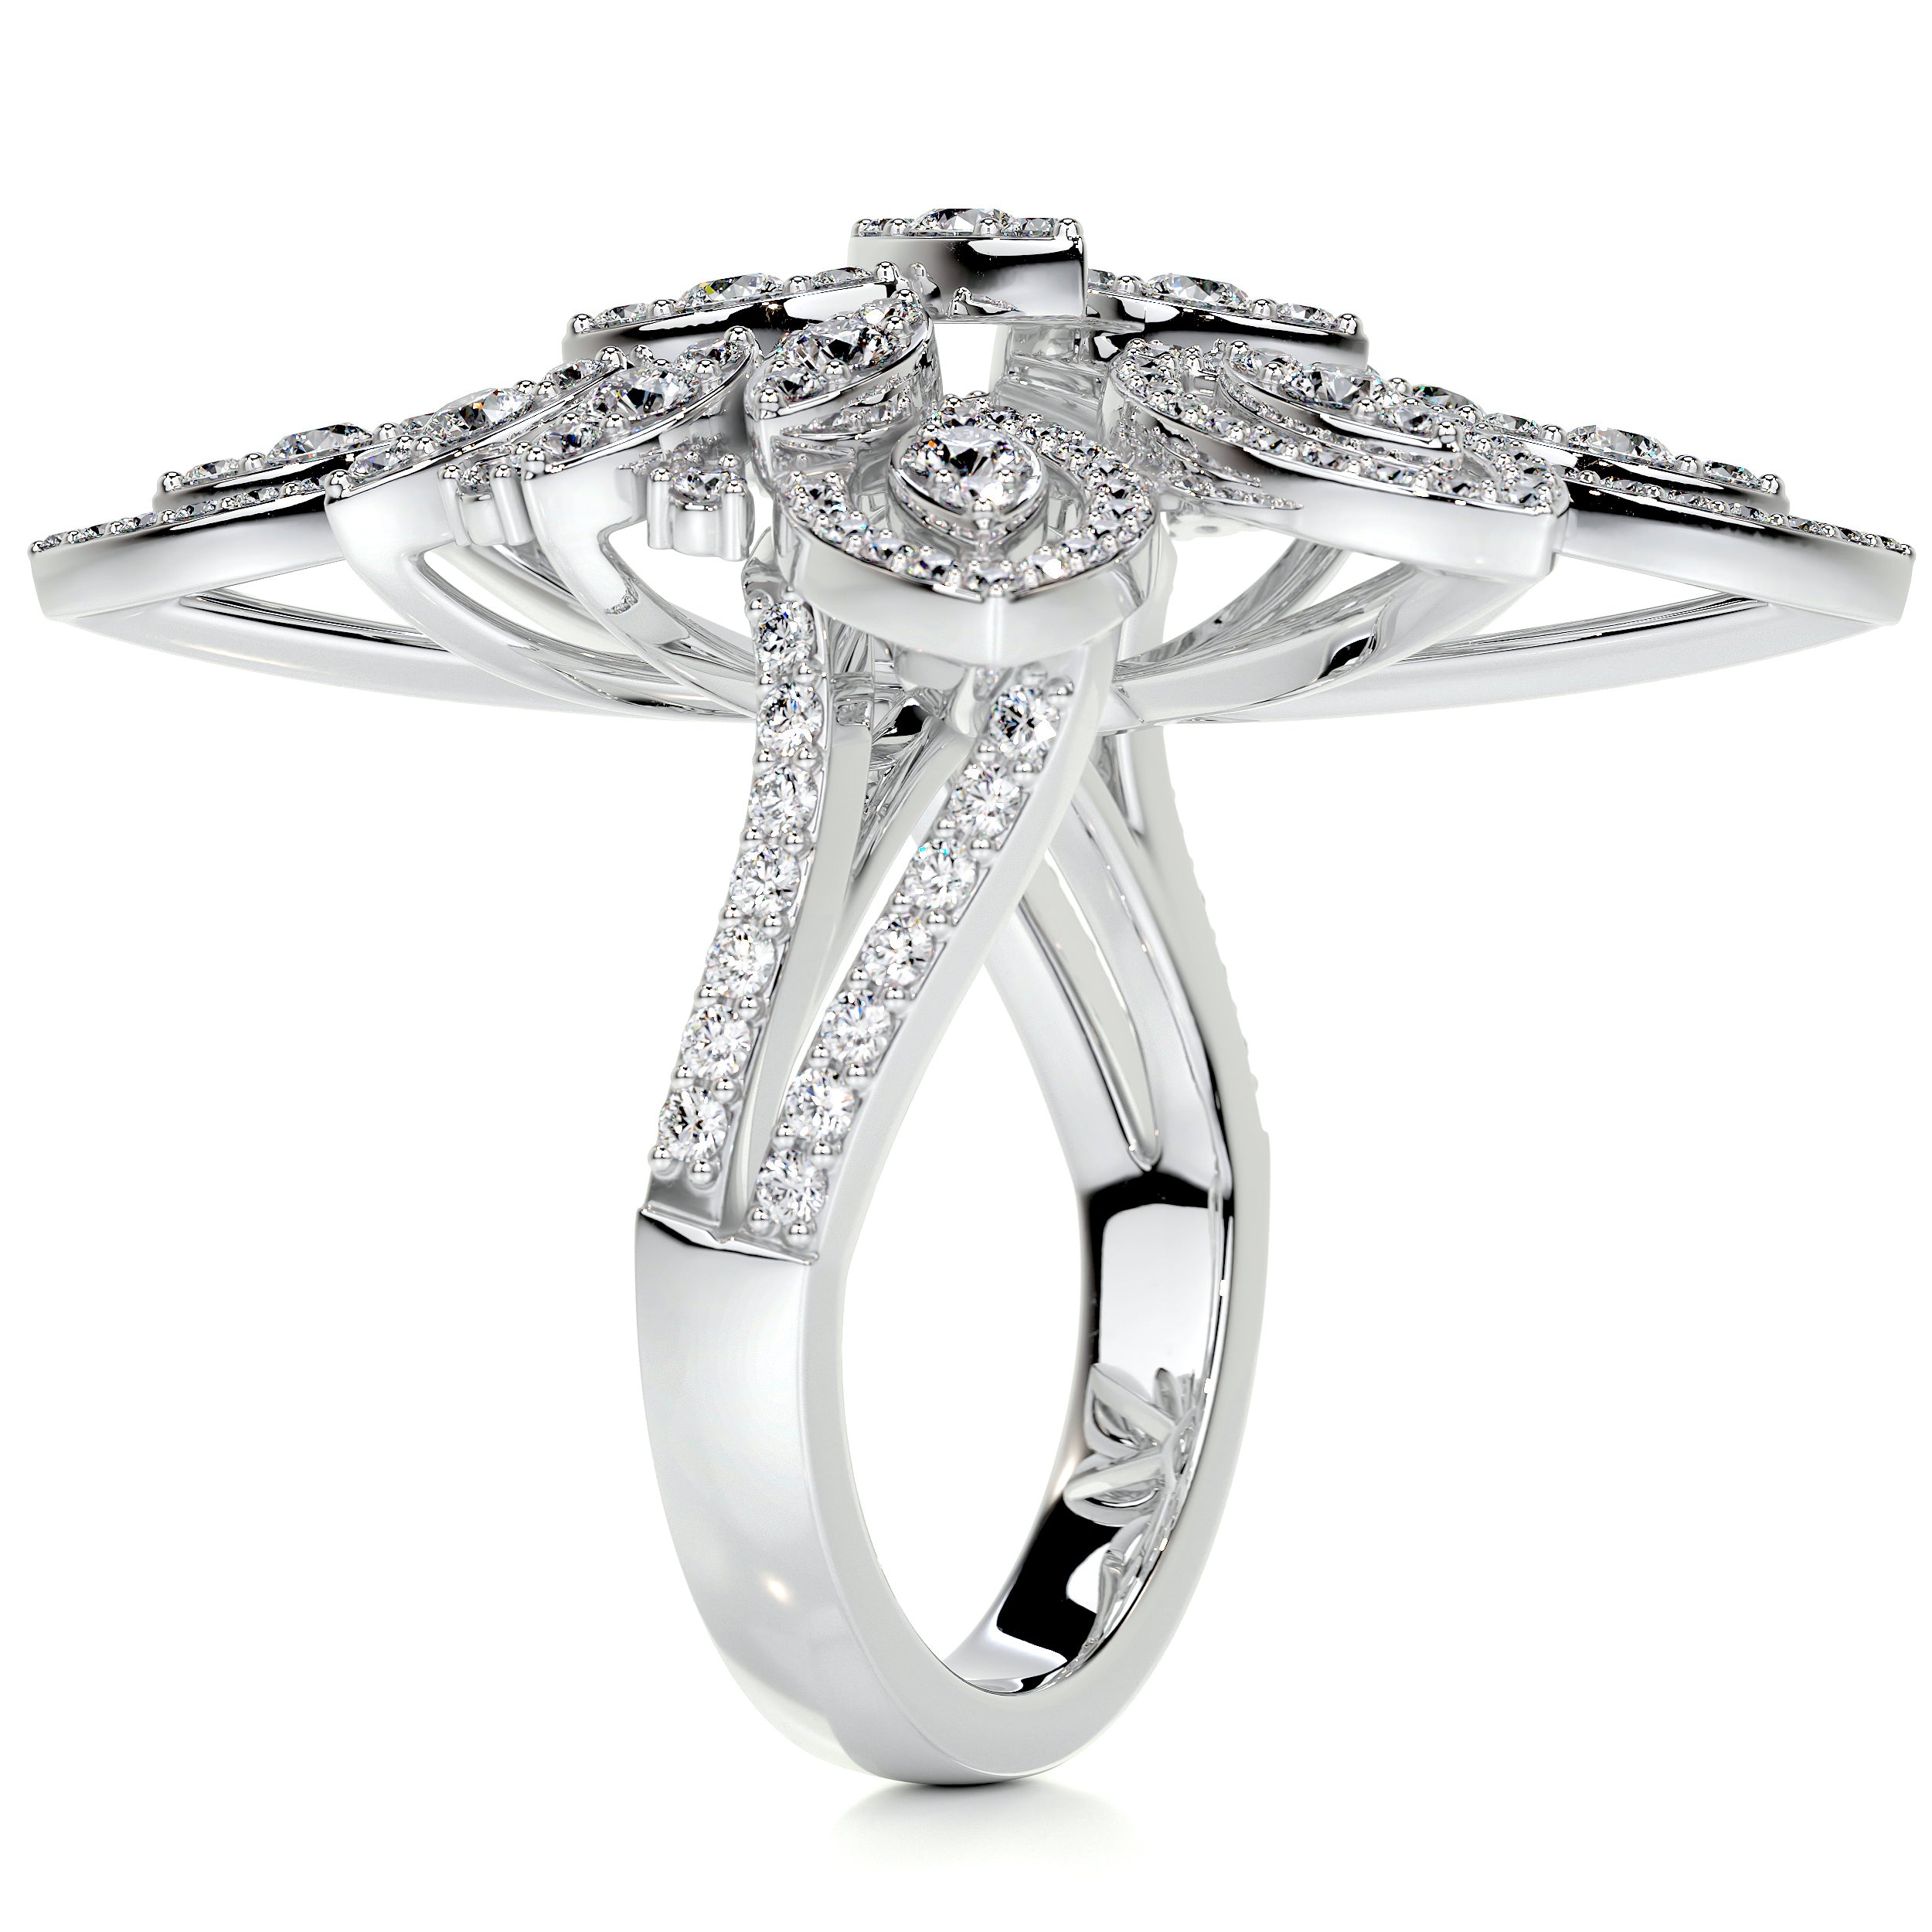 Ivory Fashion Diamond Ring   (1.5 Carat) -18K White Gold